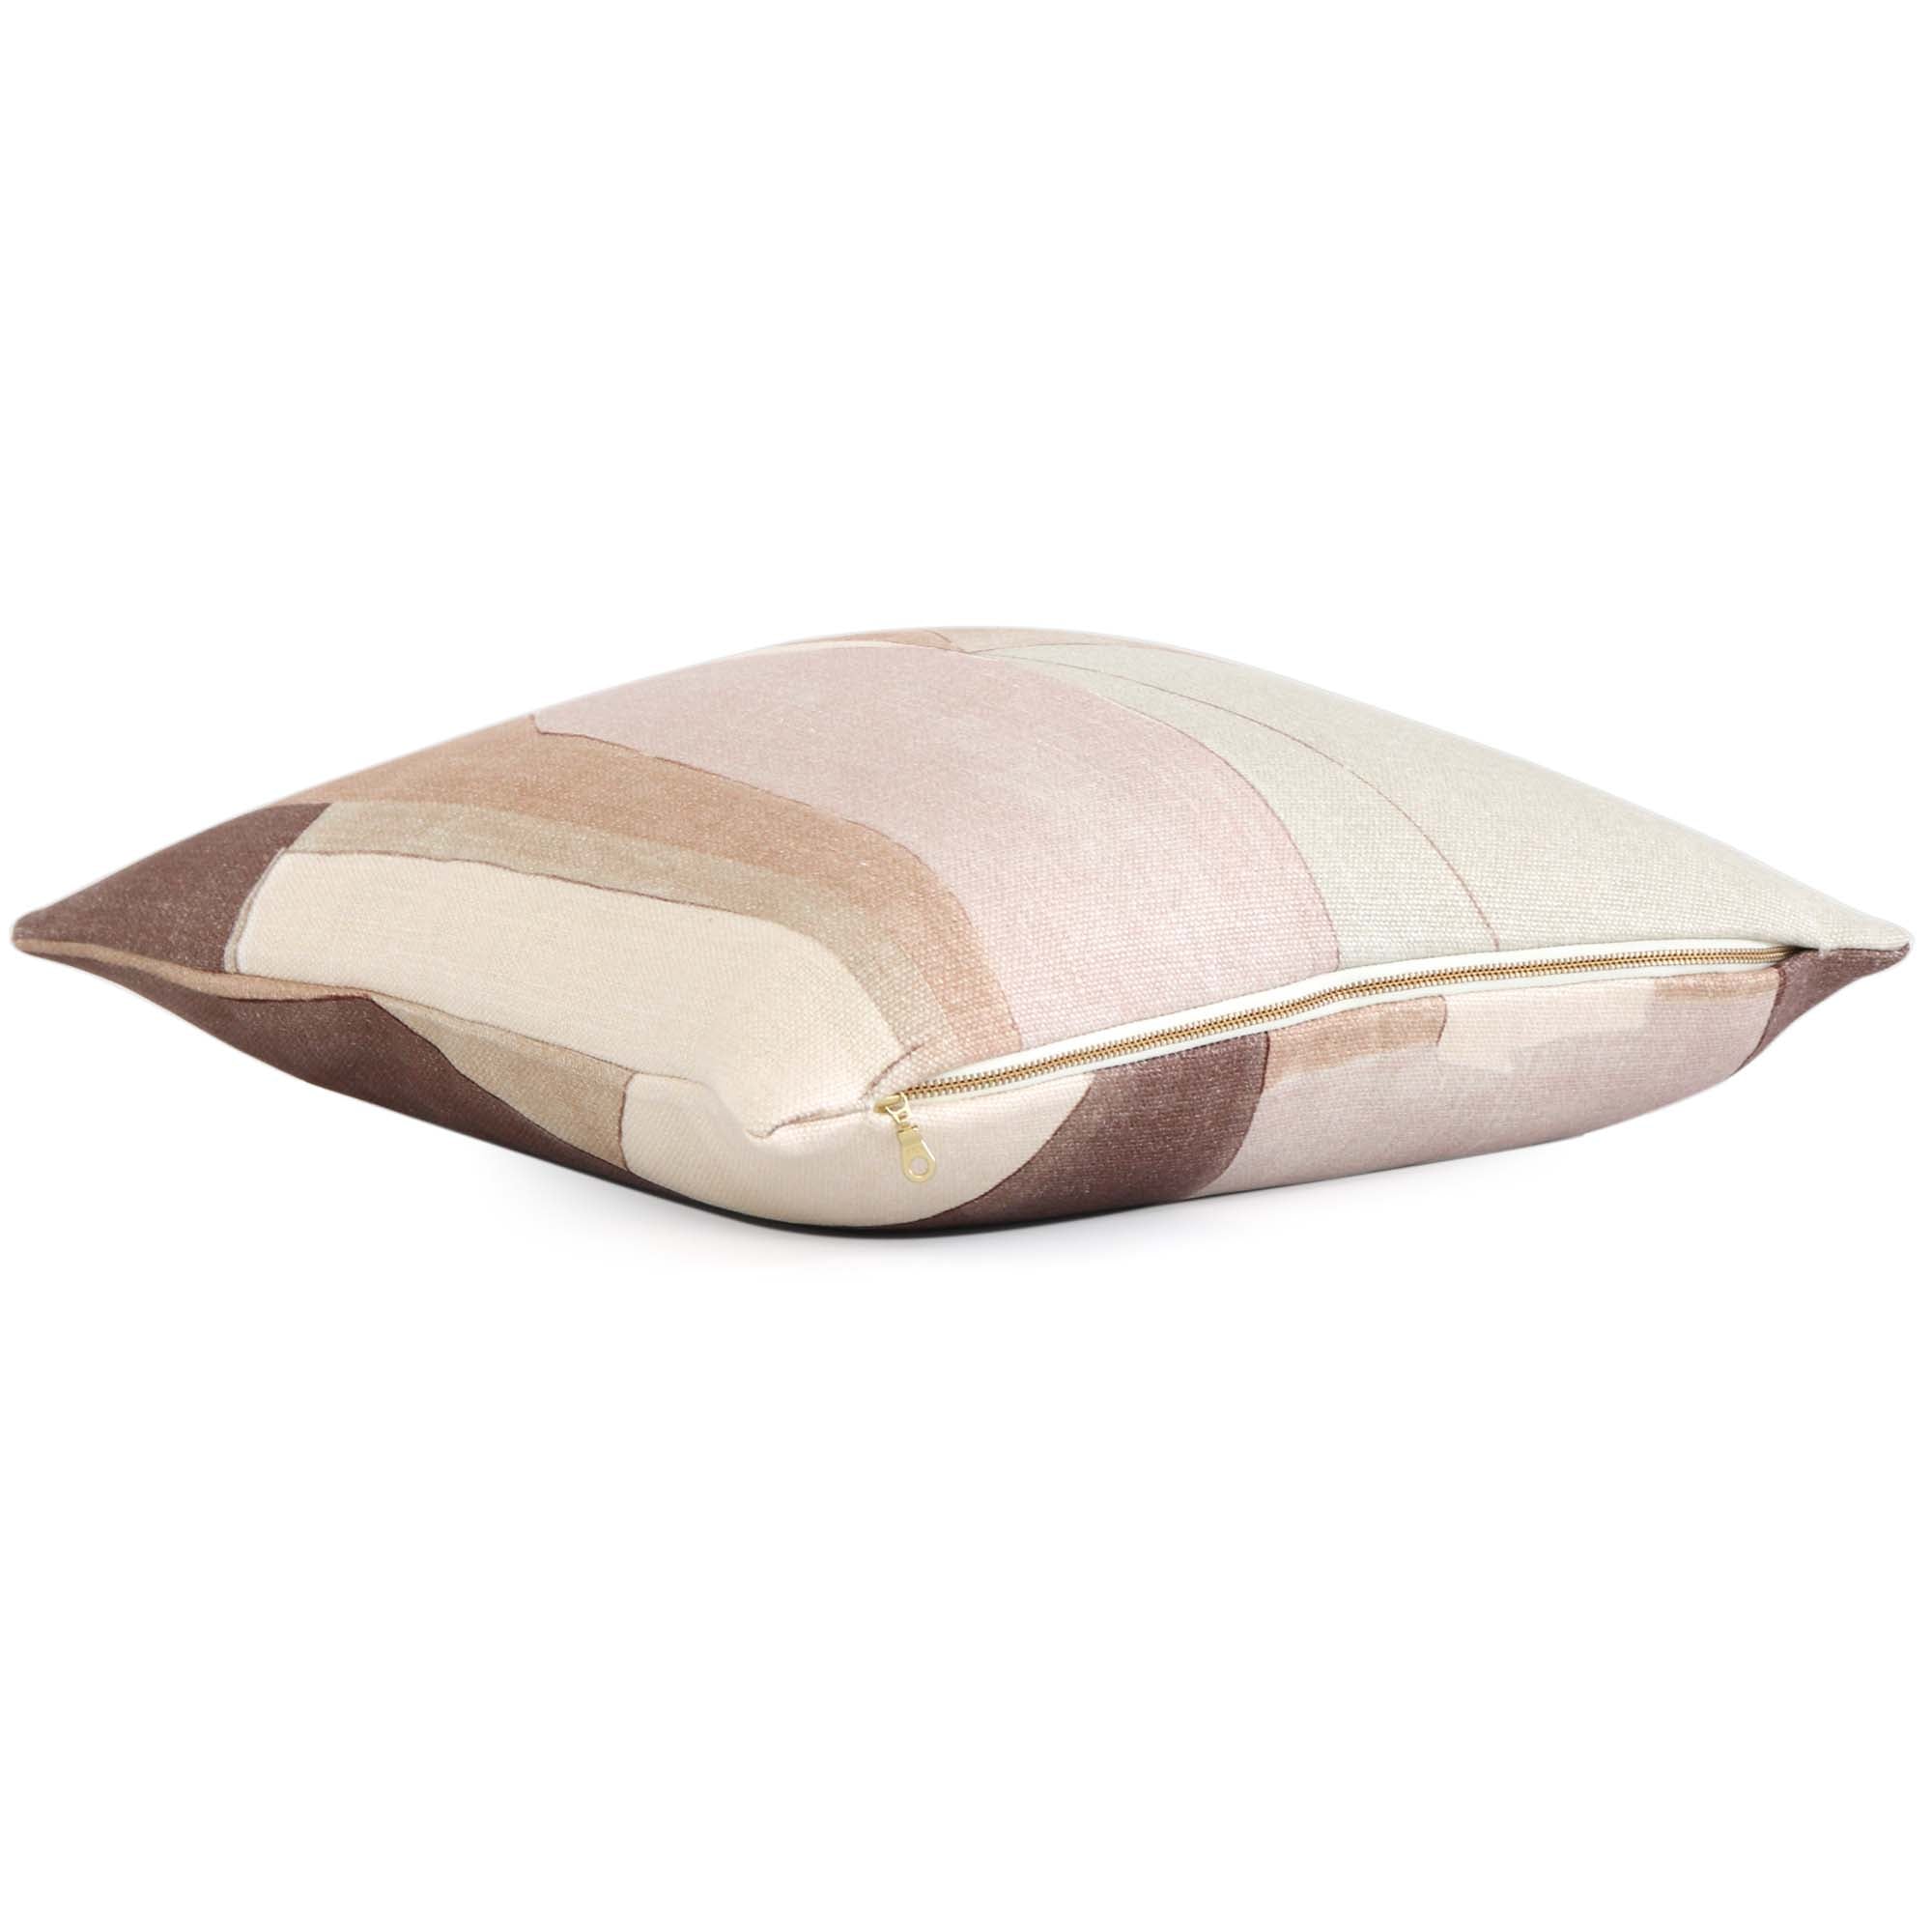 Kelly Wearstler Rebus Solid Salmon Pink Soft Velvet Throw Pillow Cover -  Chloe & Olive